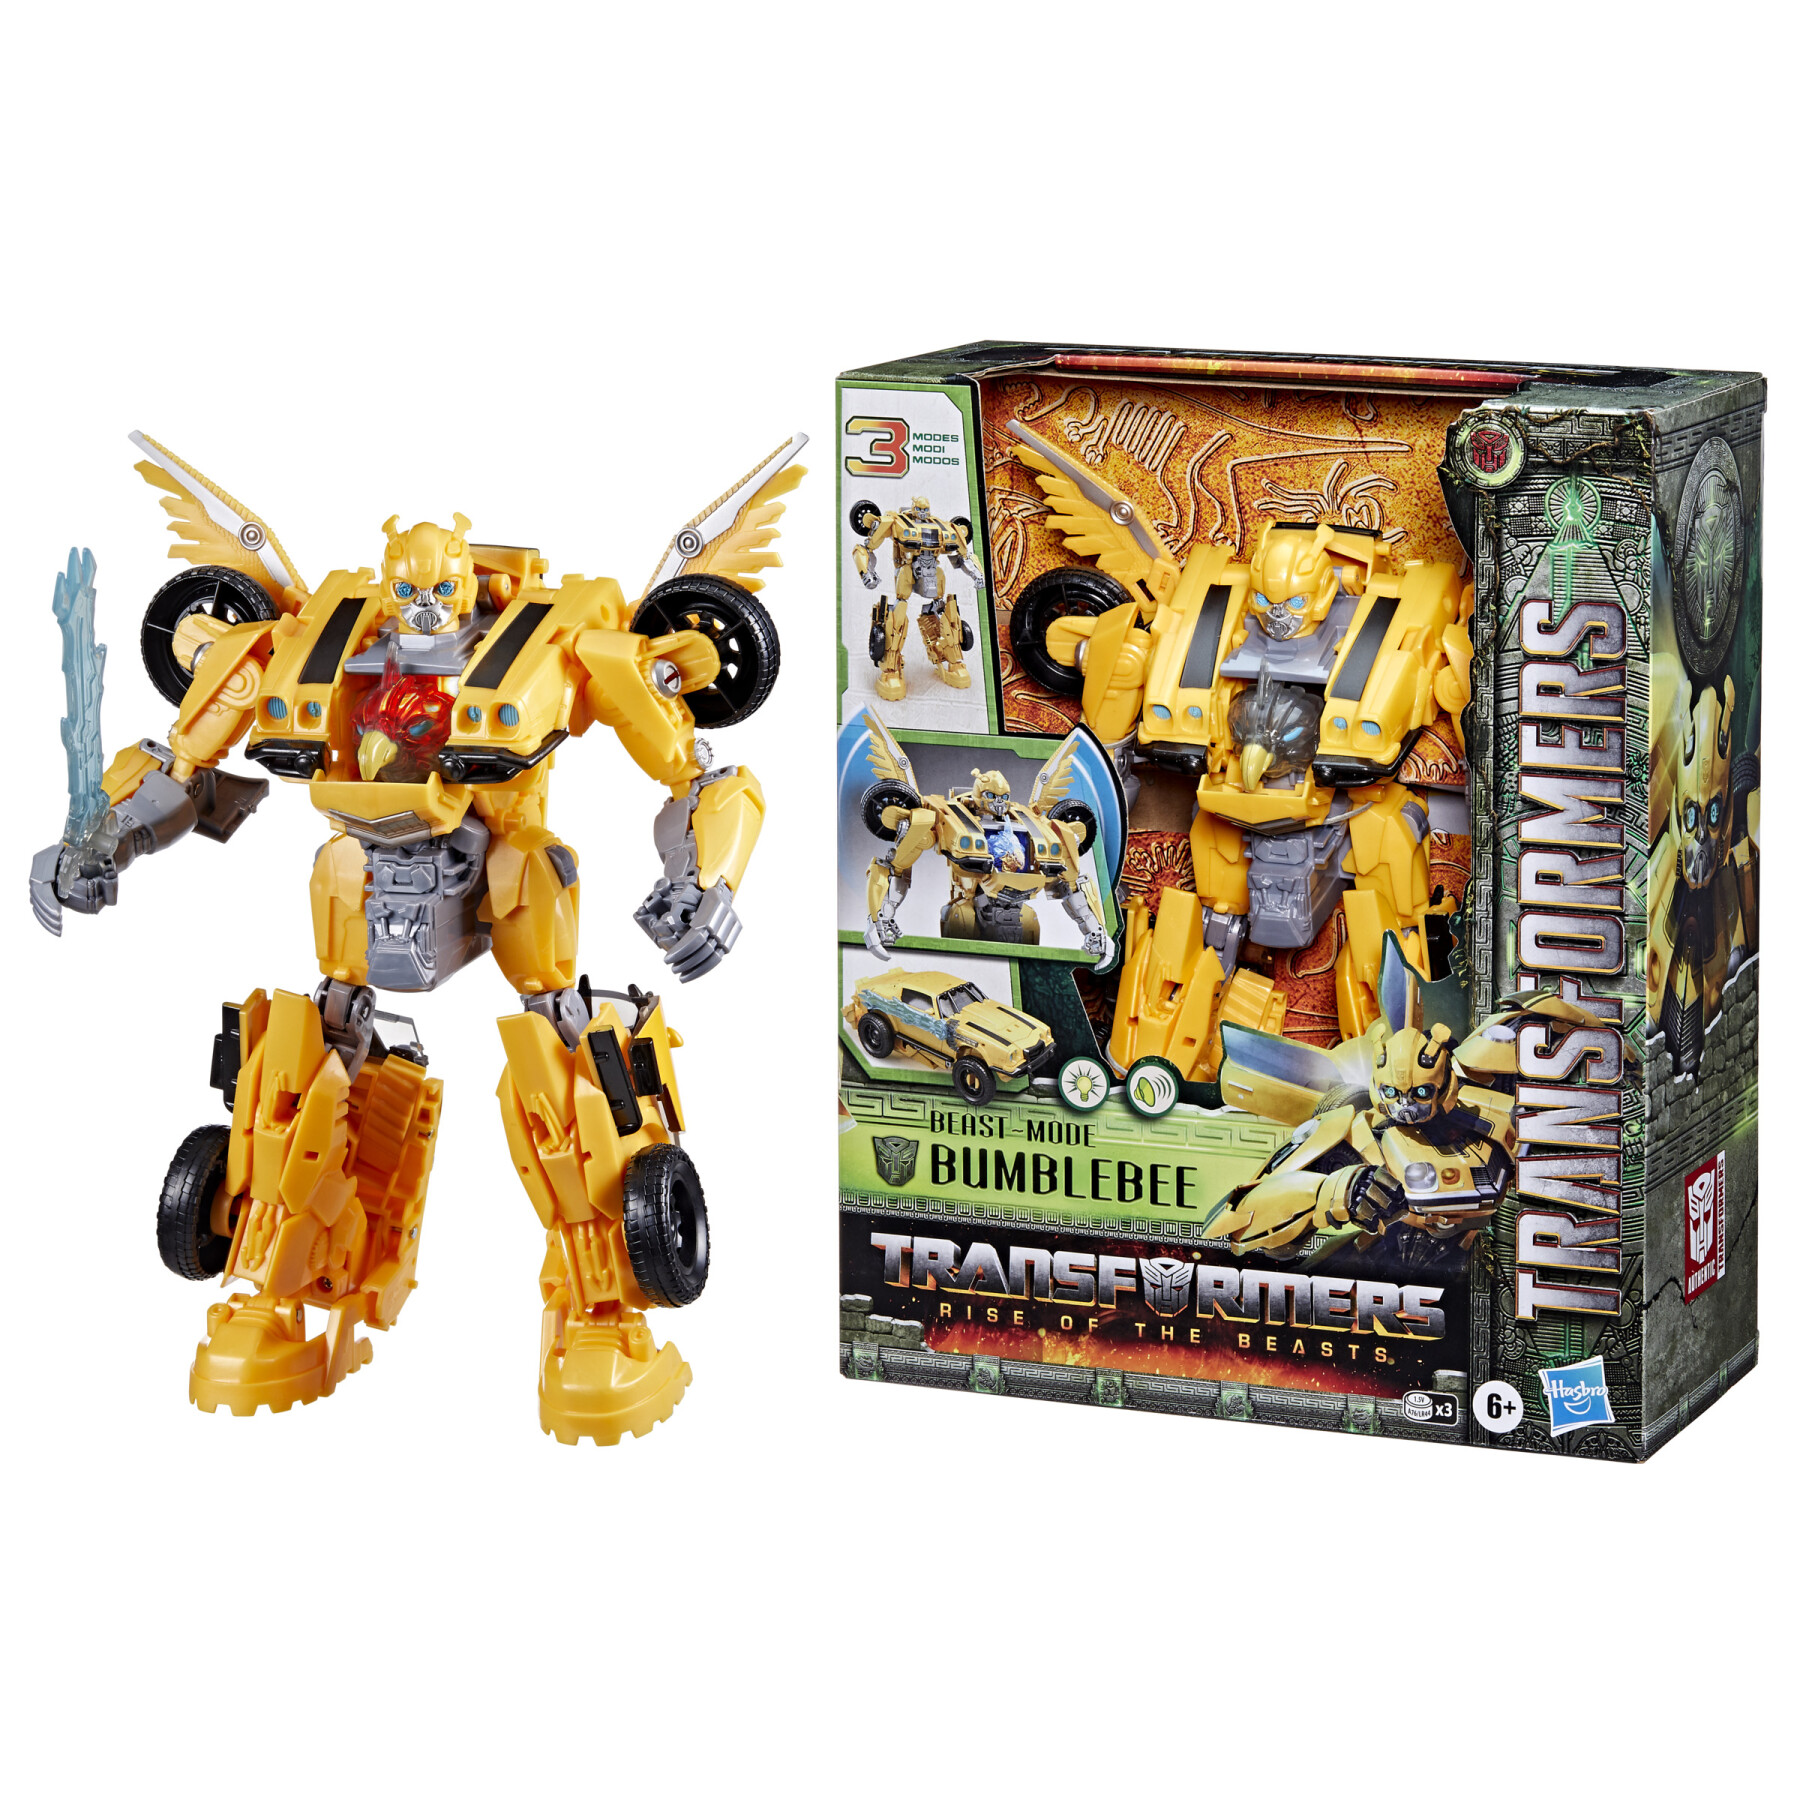 Transformers, bumblebee modalità animale ispirato al film "transformers: il risveglio", dai 6 anni in su, in scala da 25 cm - Transformers